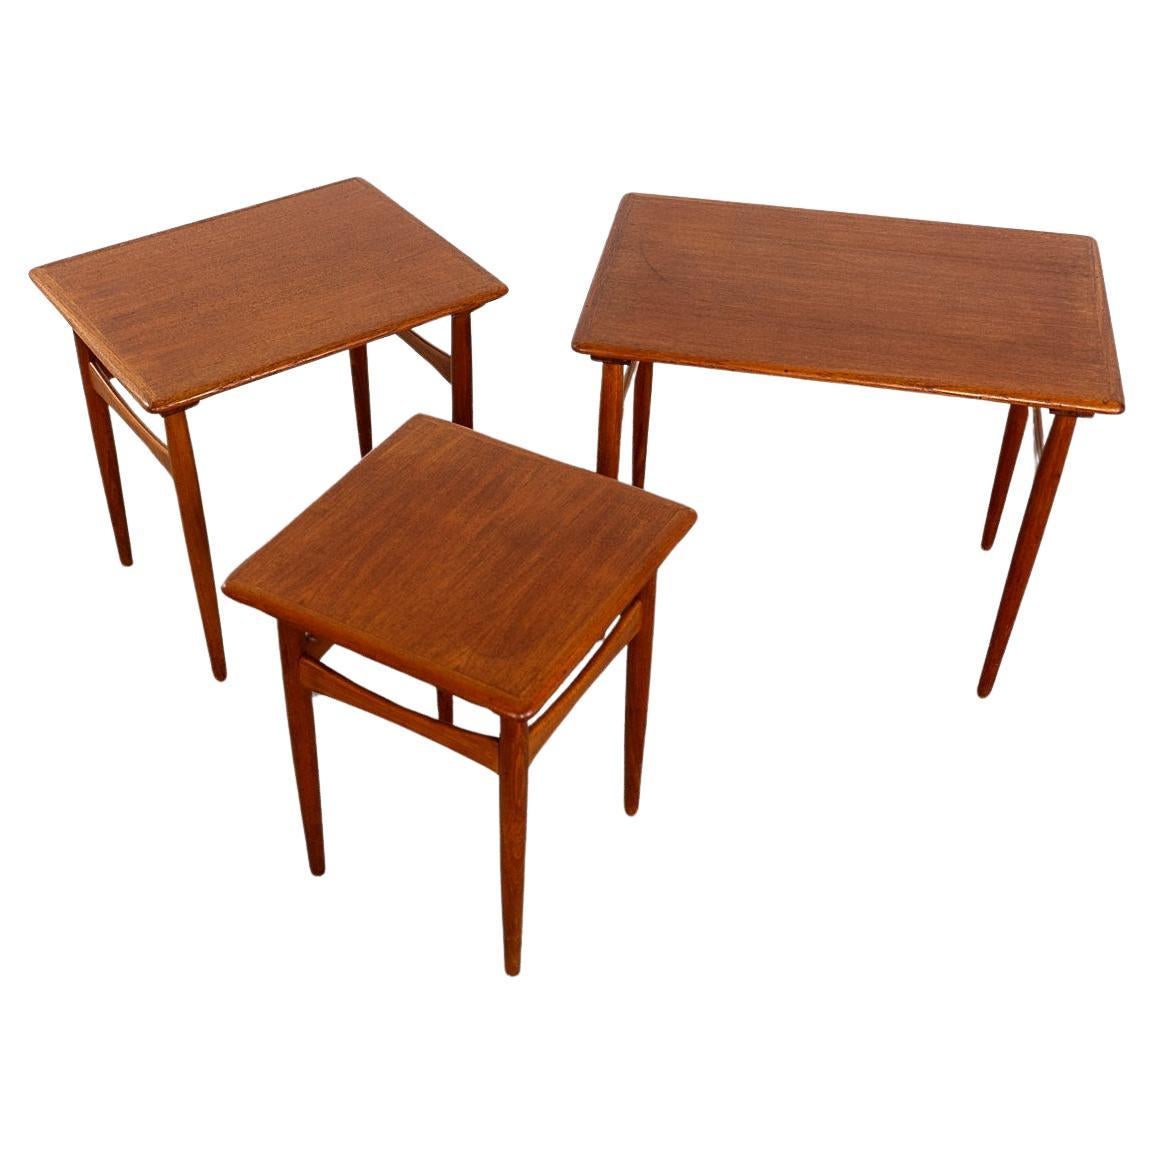 Nisttische aus Teakholz, ca. 1960. Platzsparendes Design, die Grundfläche von 1 Tisch mit der Funktionalität von 3! Die konisch zulaufenden Beine und die bogenförmigen Querstreben machen sie einzigartig! 

Unrestauriertes Exemplar mit der Option, es